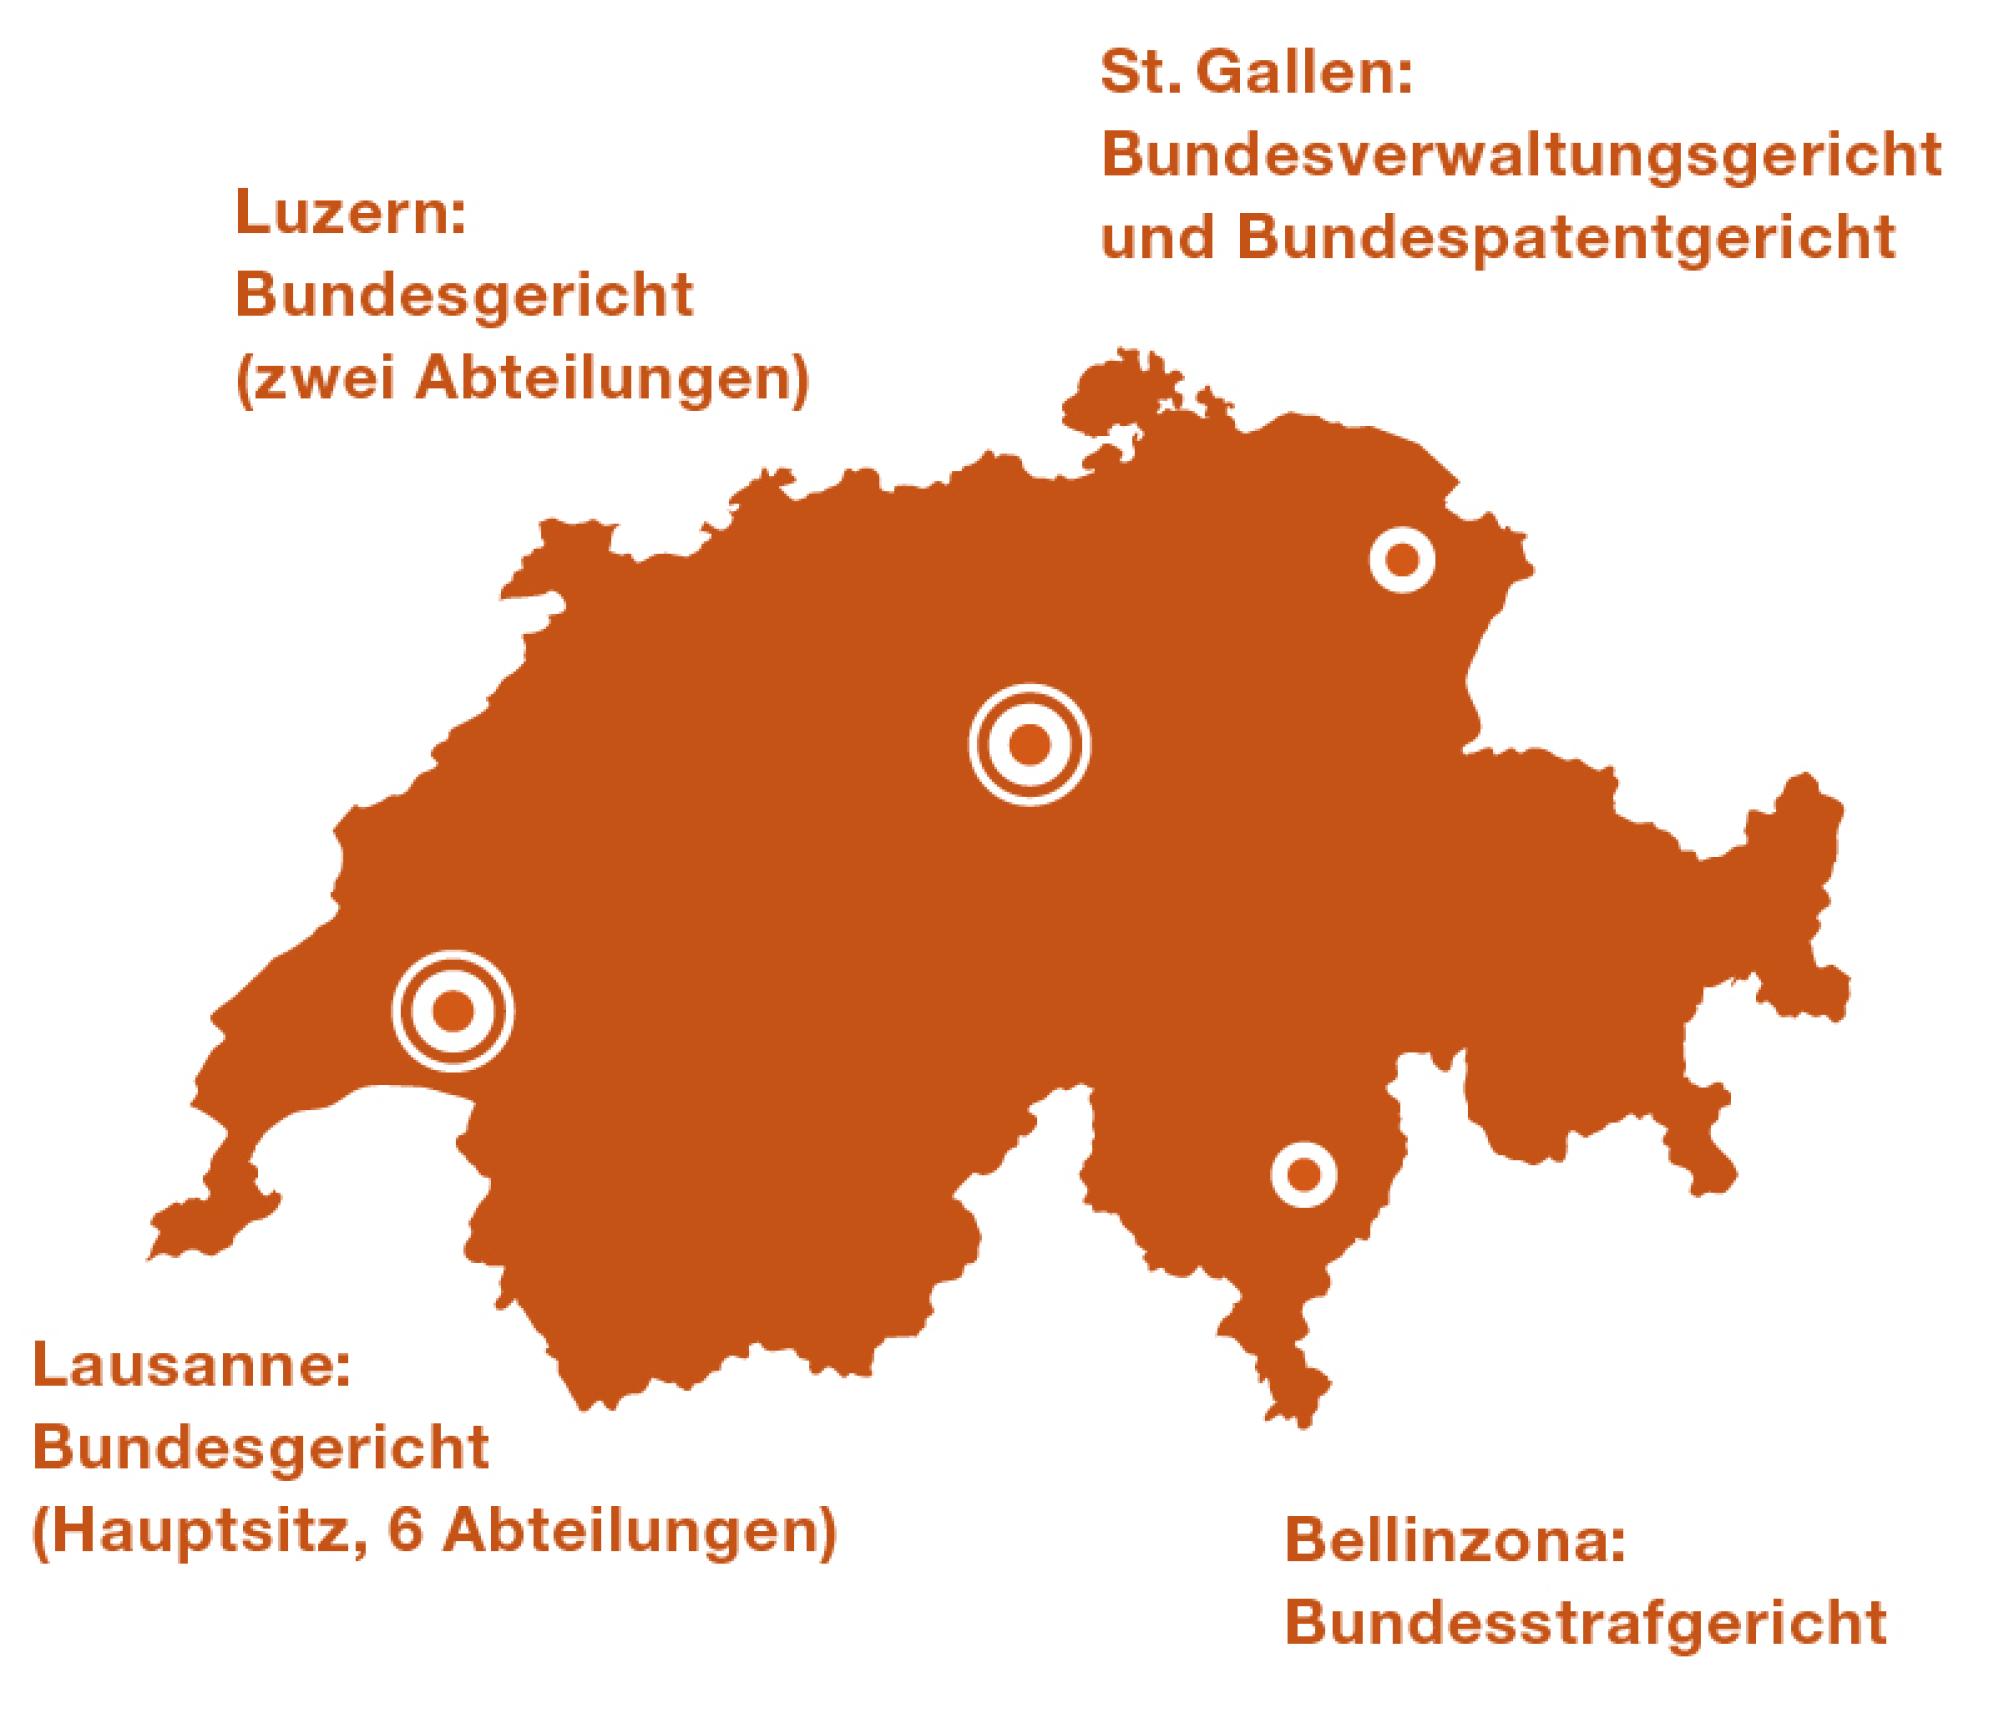 Lausanne Hauptsitz Bundesgericht (6 Abteilungen). Luzern Bundesgericht (2 Abteilungen). St. Gallen Bundesverwaltungsgericht und Bundespatentgericht. Bellinzona Bundesstrafgericht.